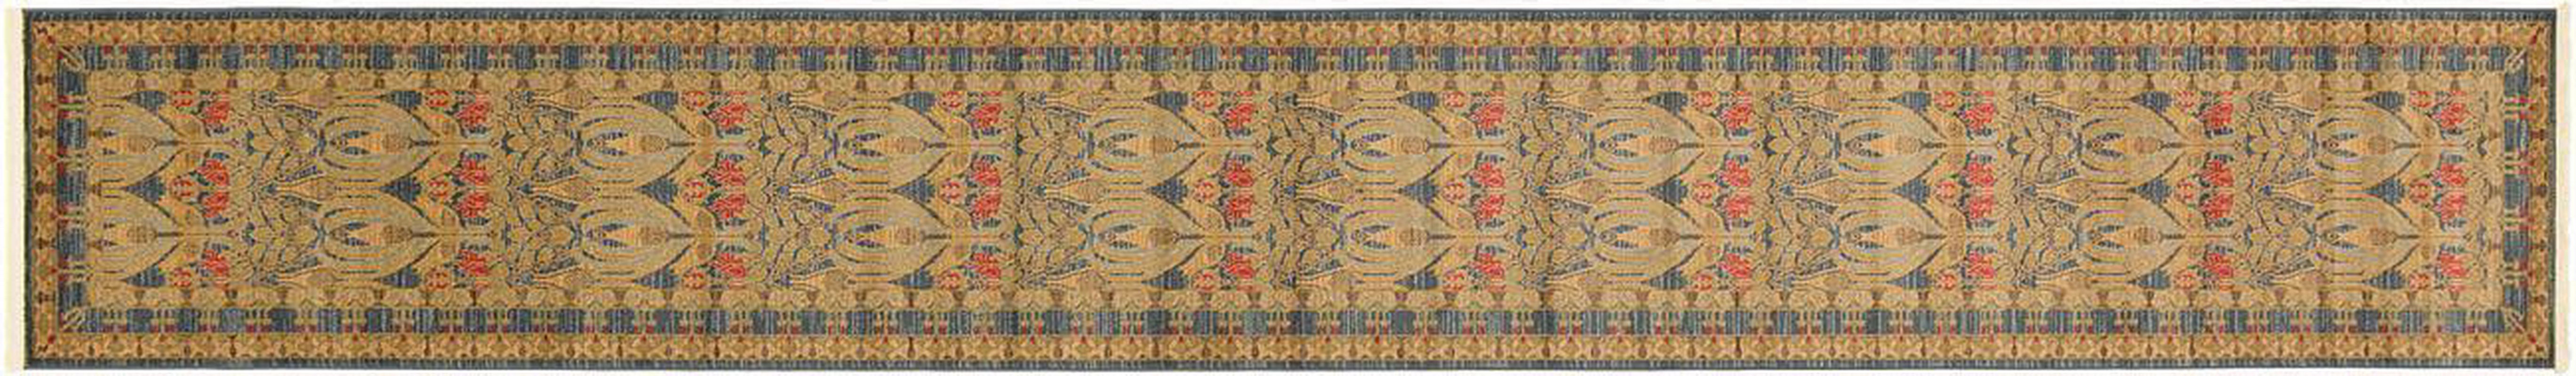 古典经典地毯ID10141